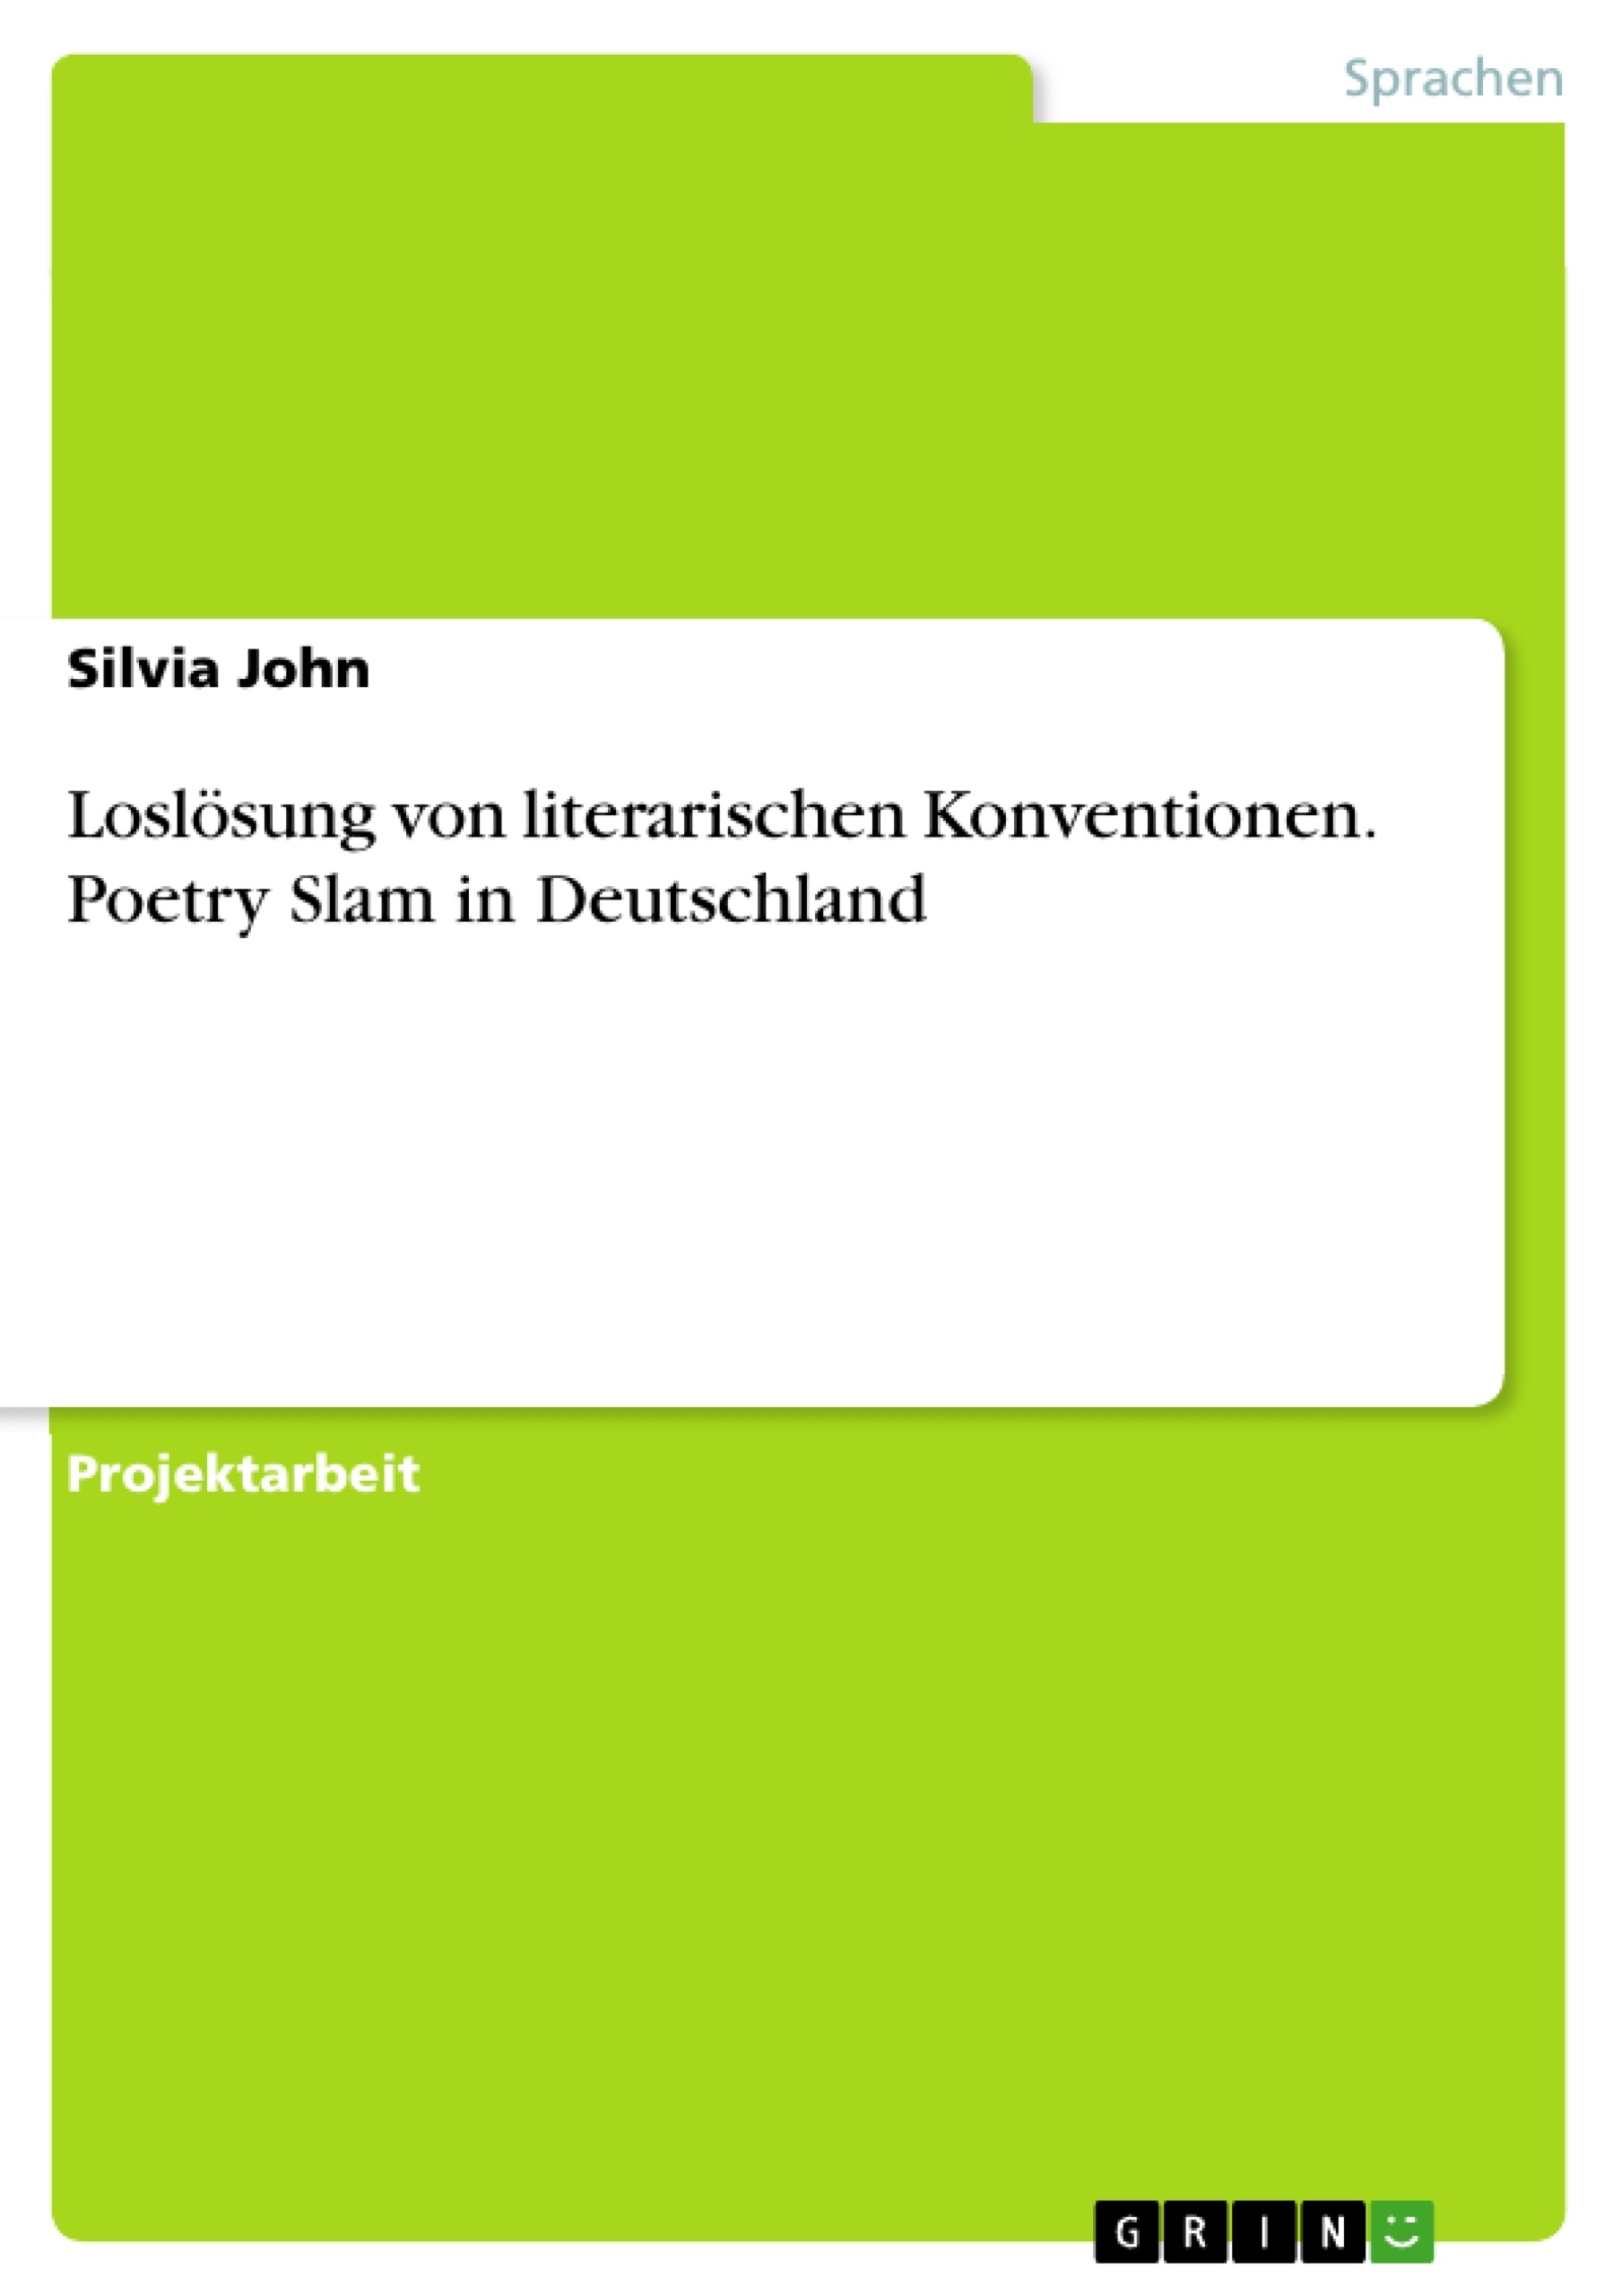 Title: Loslösung von literarischen Konventionen. Poetry Slam in Deutschland